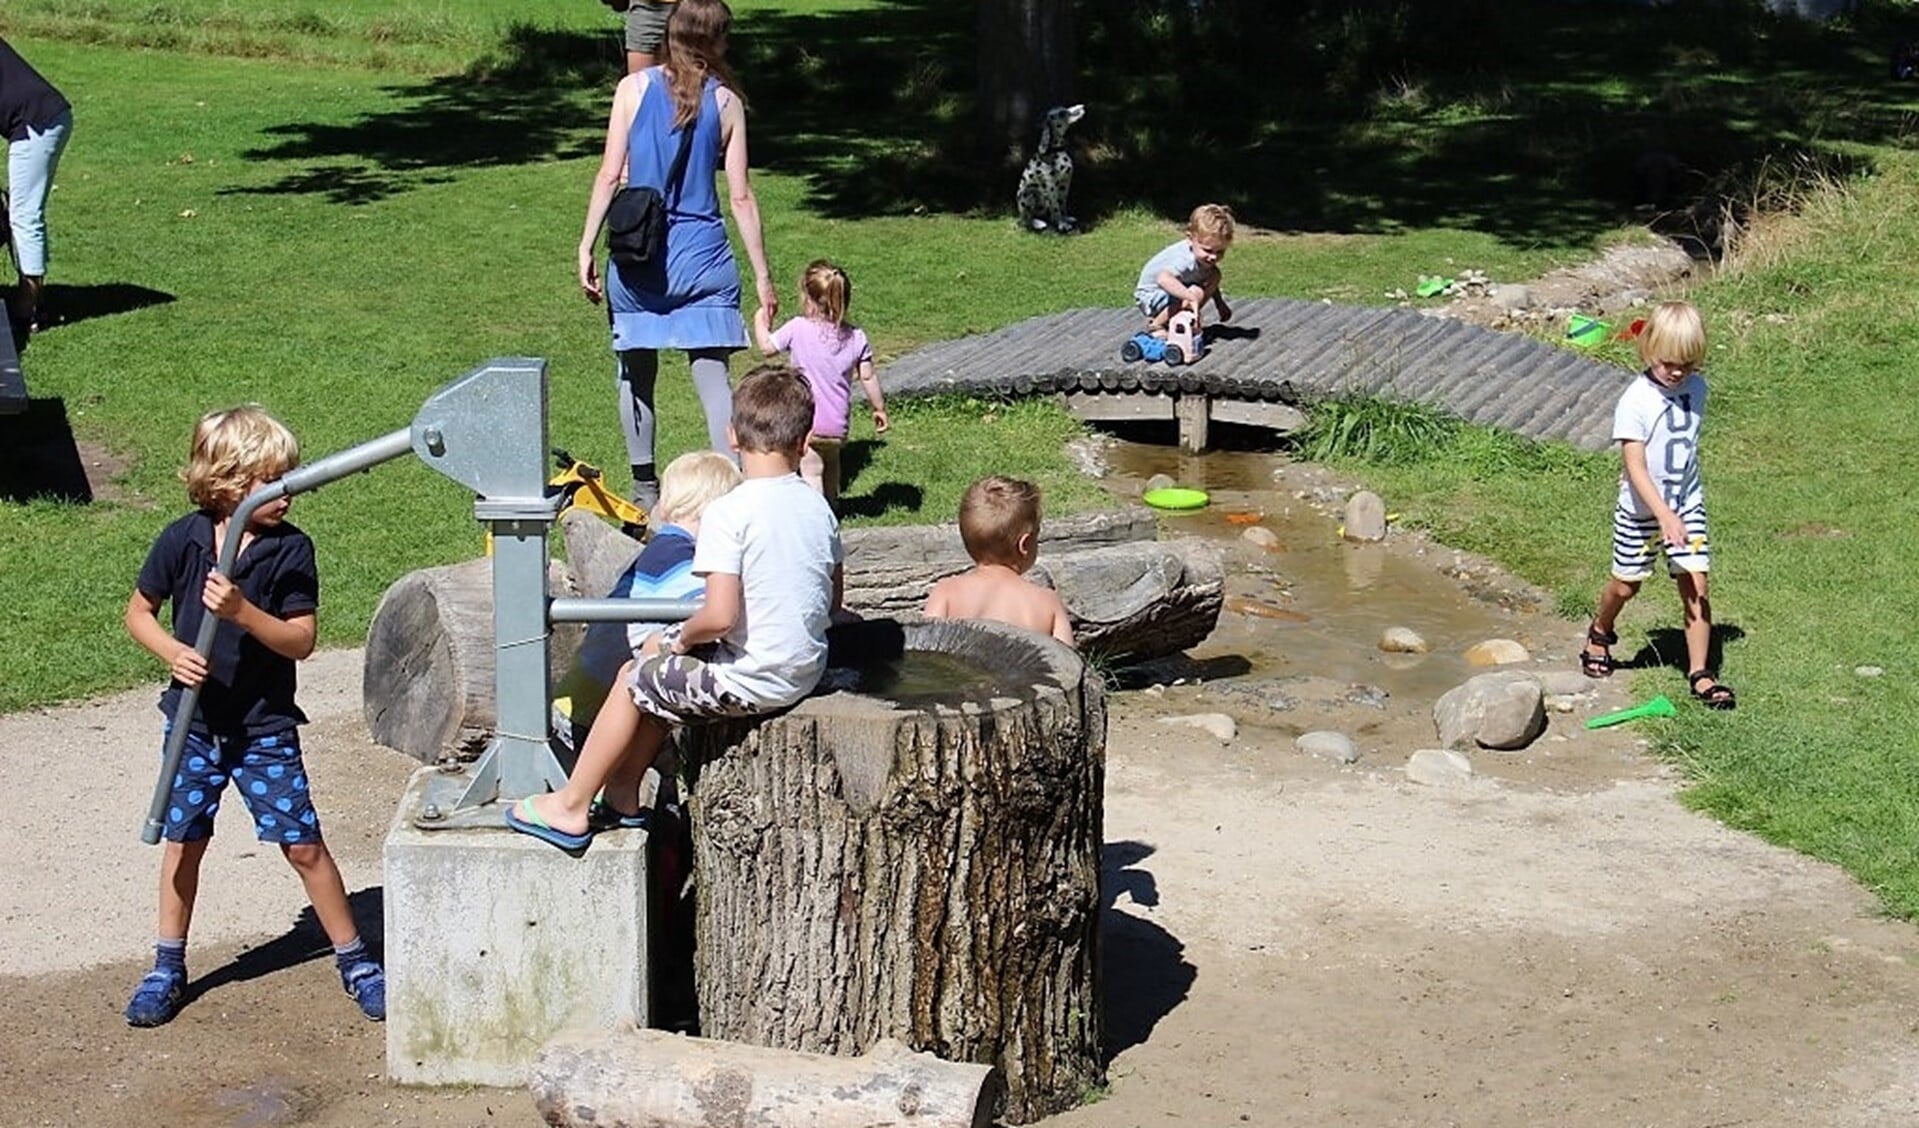 Kinderen druk aan het spelen op de waterspeelplaats in Stadstuin Rusthout (archieffoto Dick Janssen).